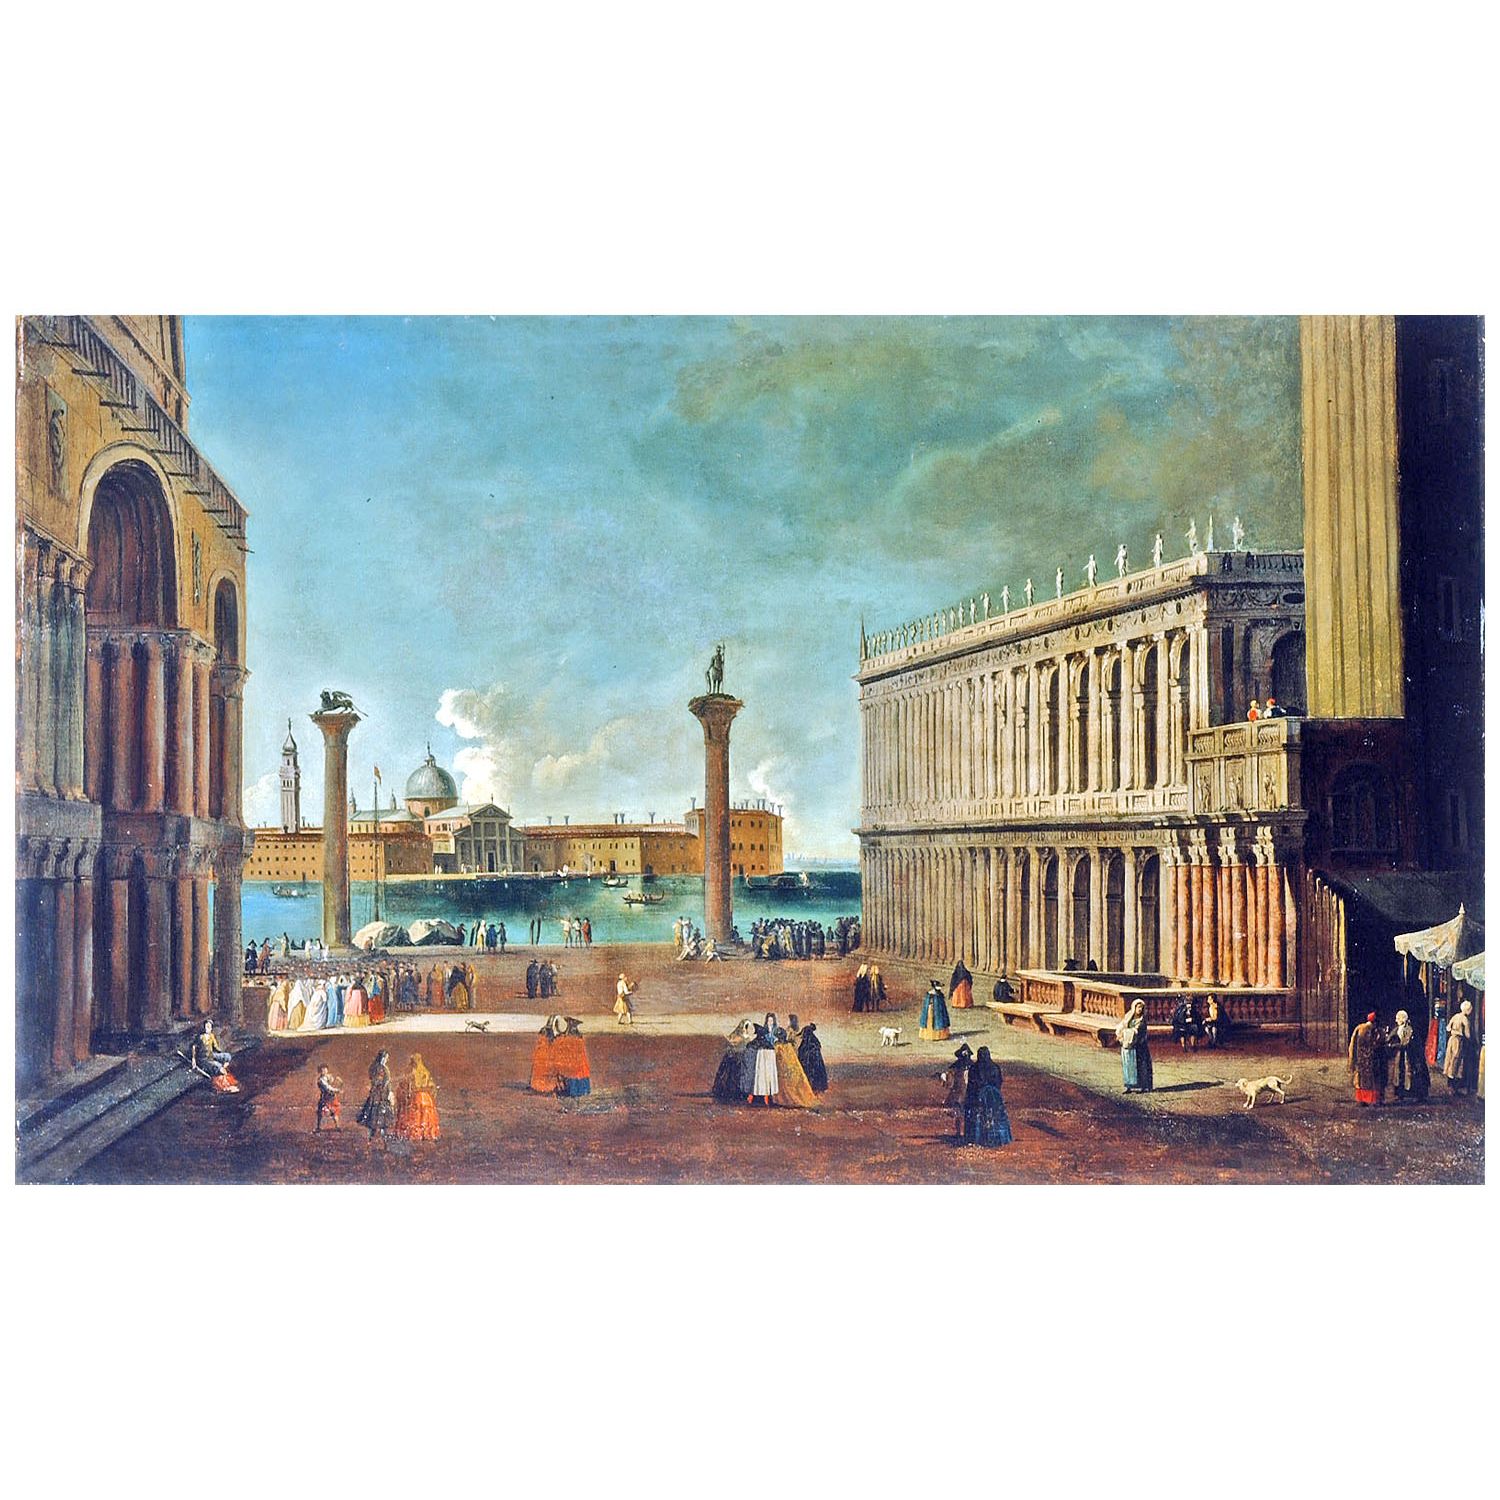 Luca Carlevarijs. Venezia. 1716. Narodna galerija Ljubljana